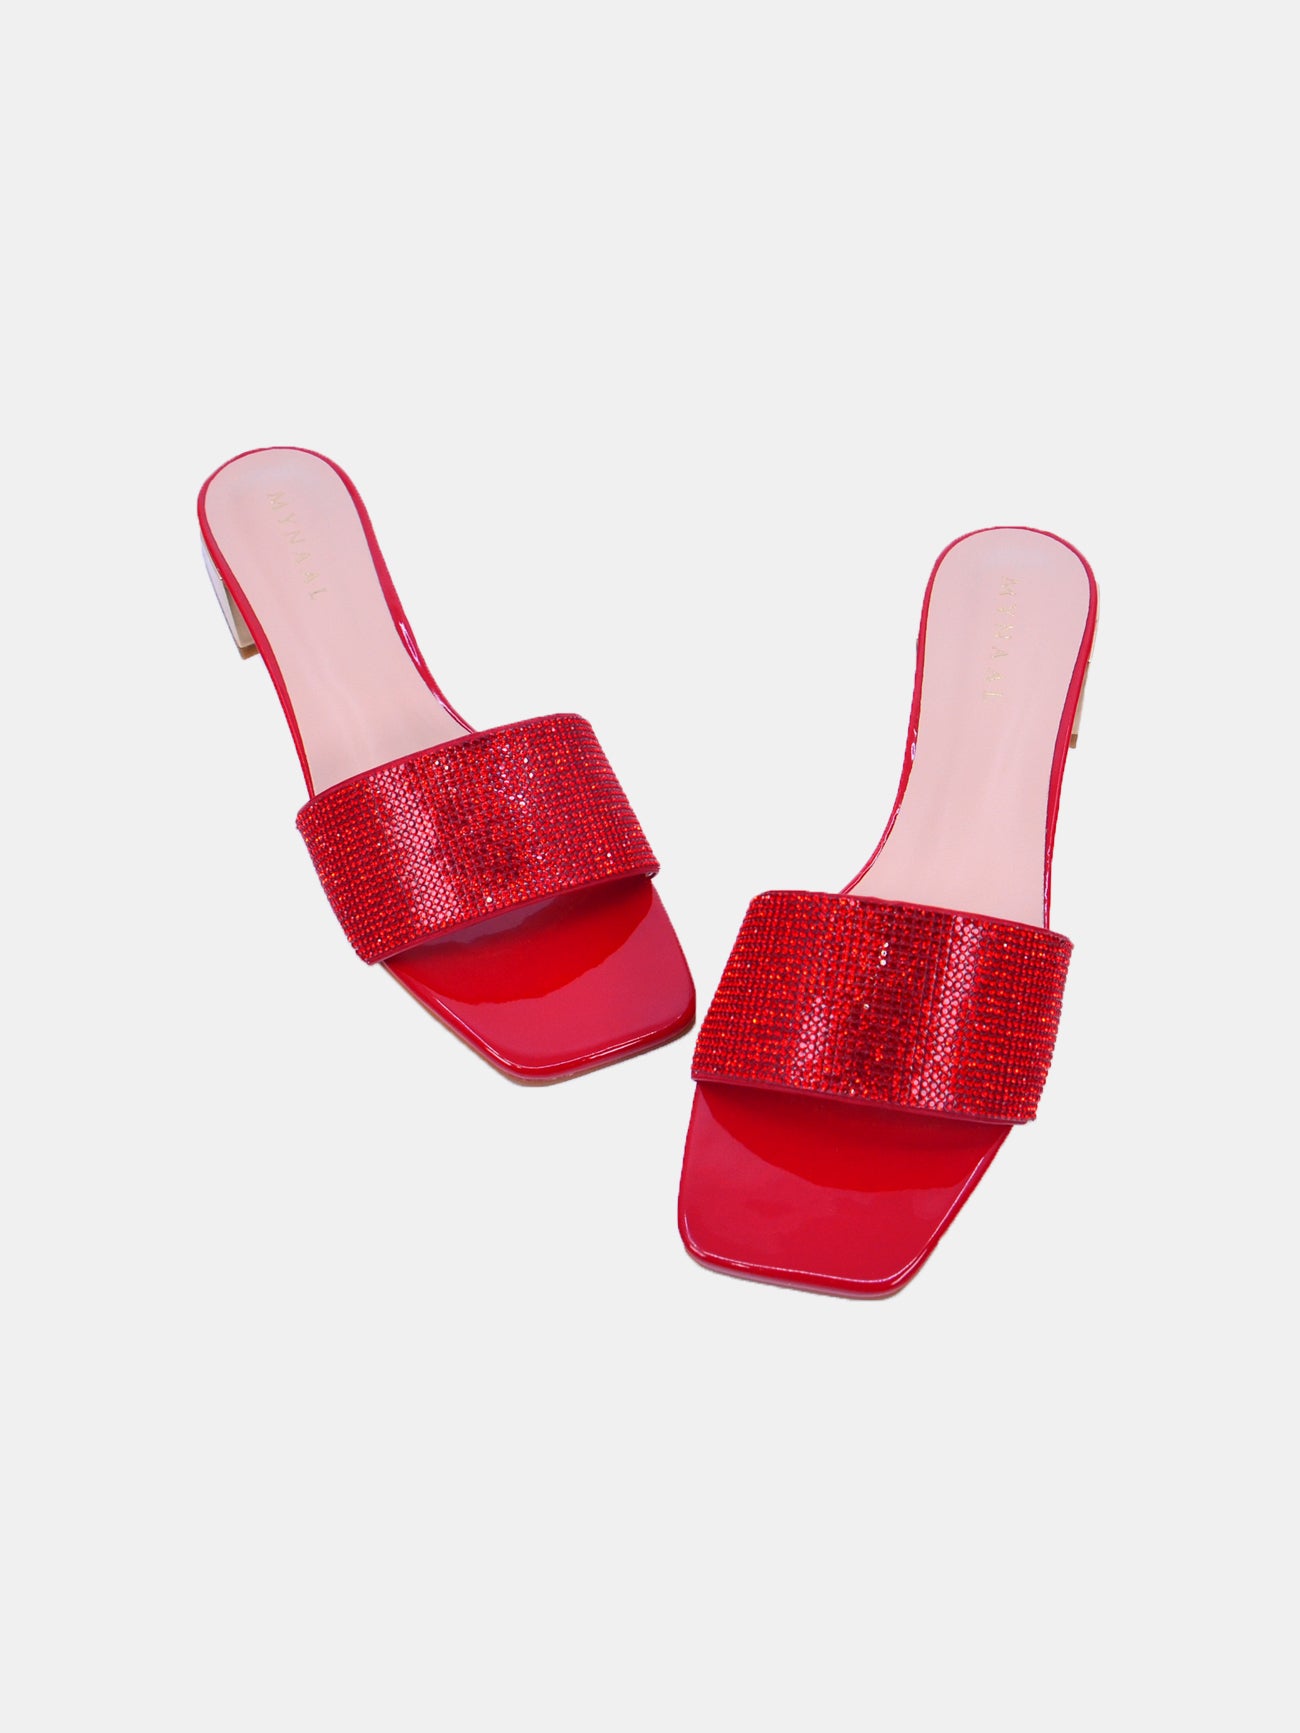 Mynaal Starling Women's Block Heel Sandals #color_Red